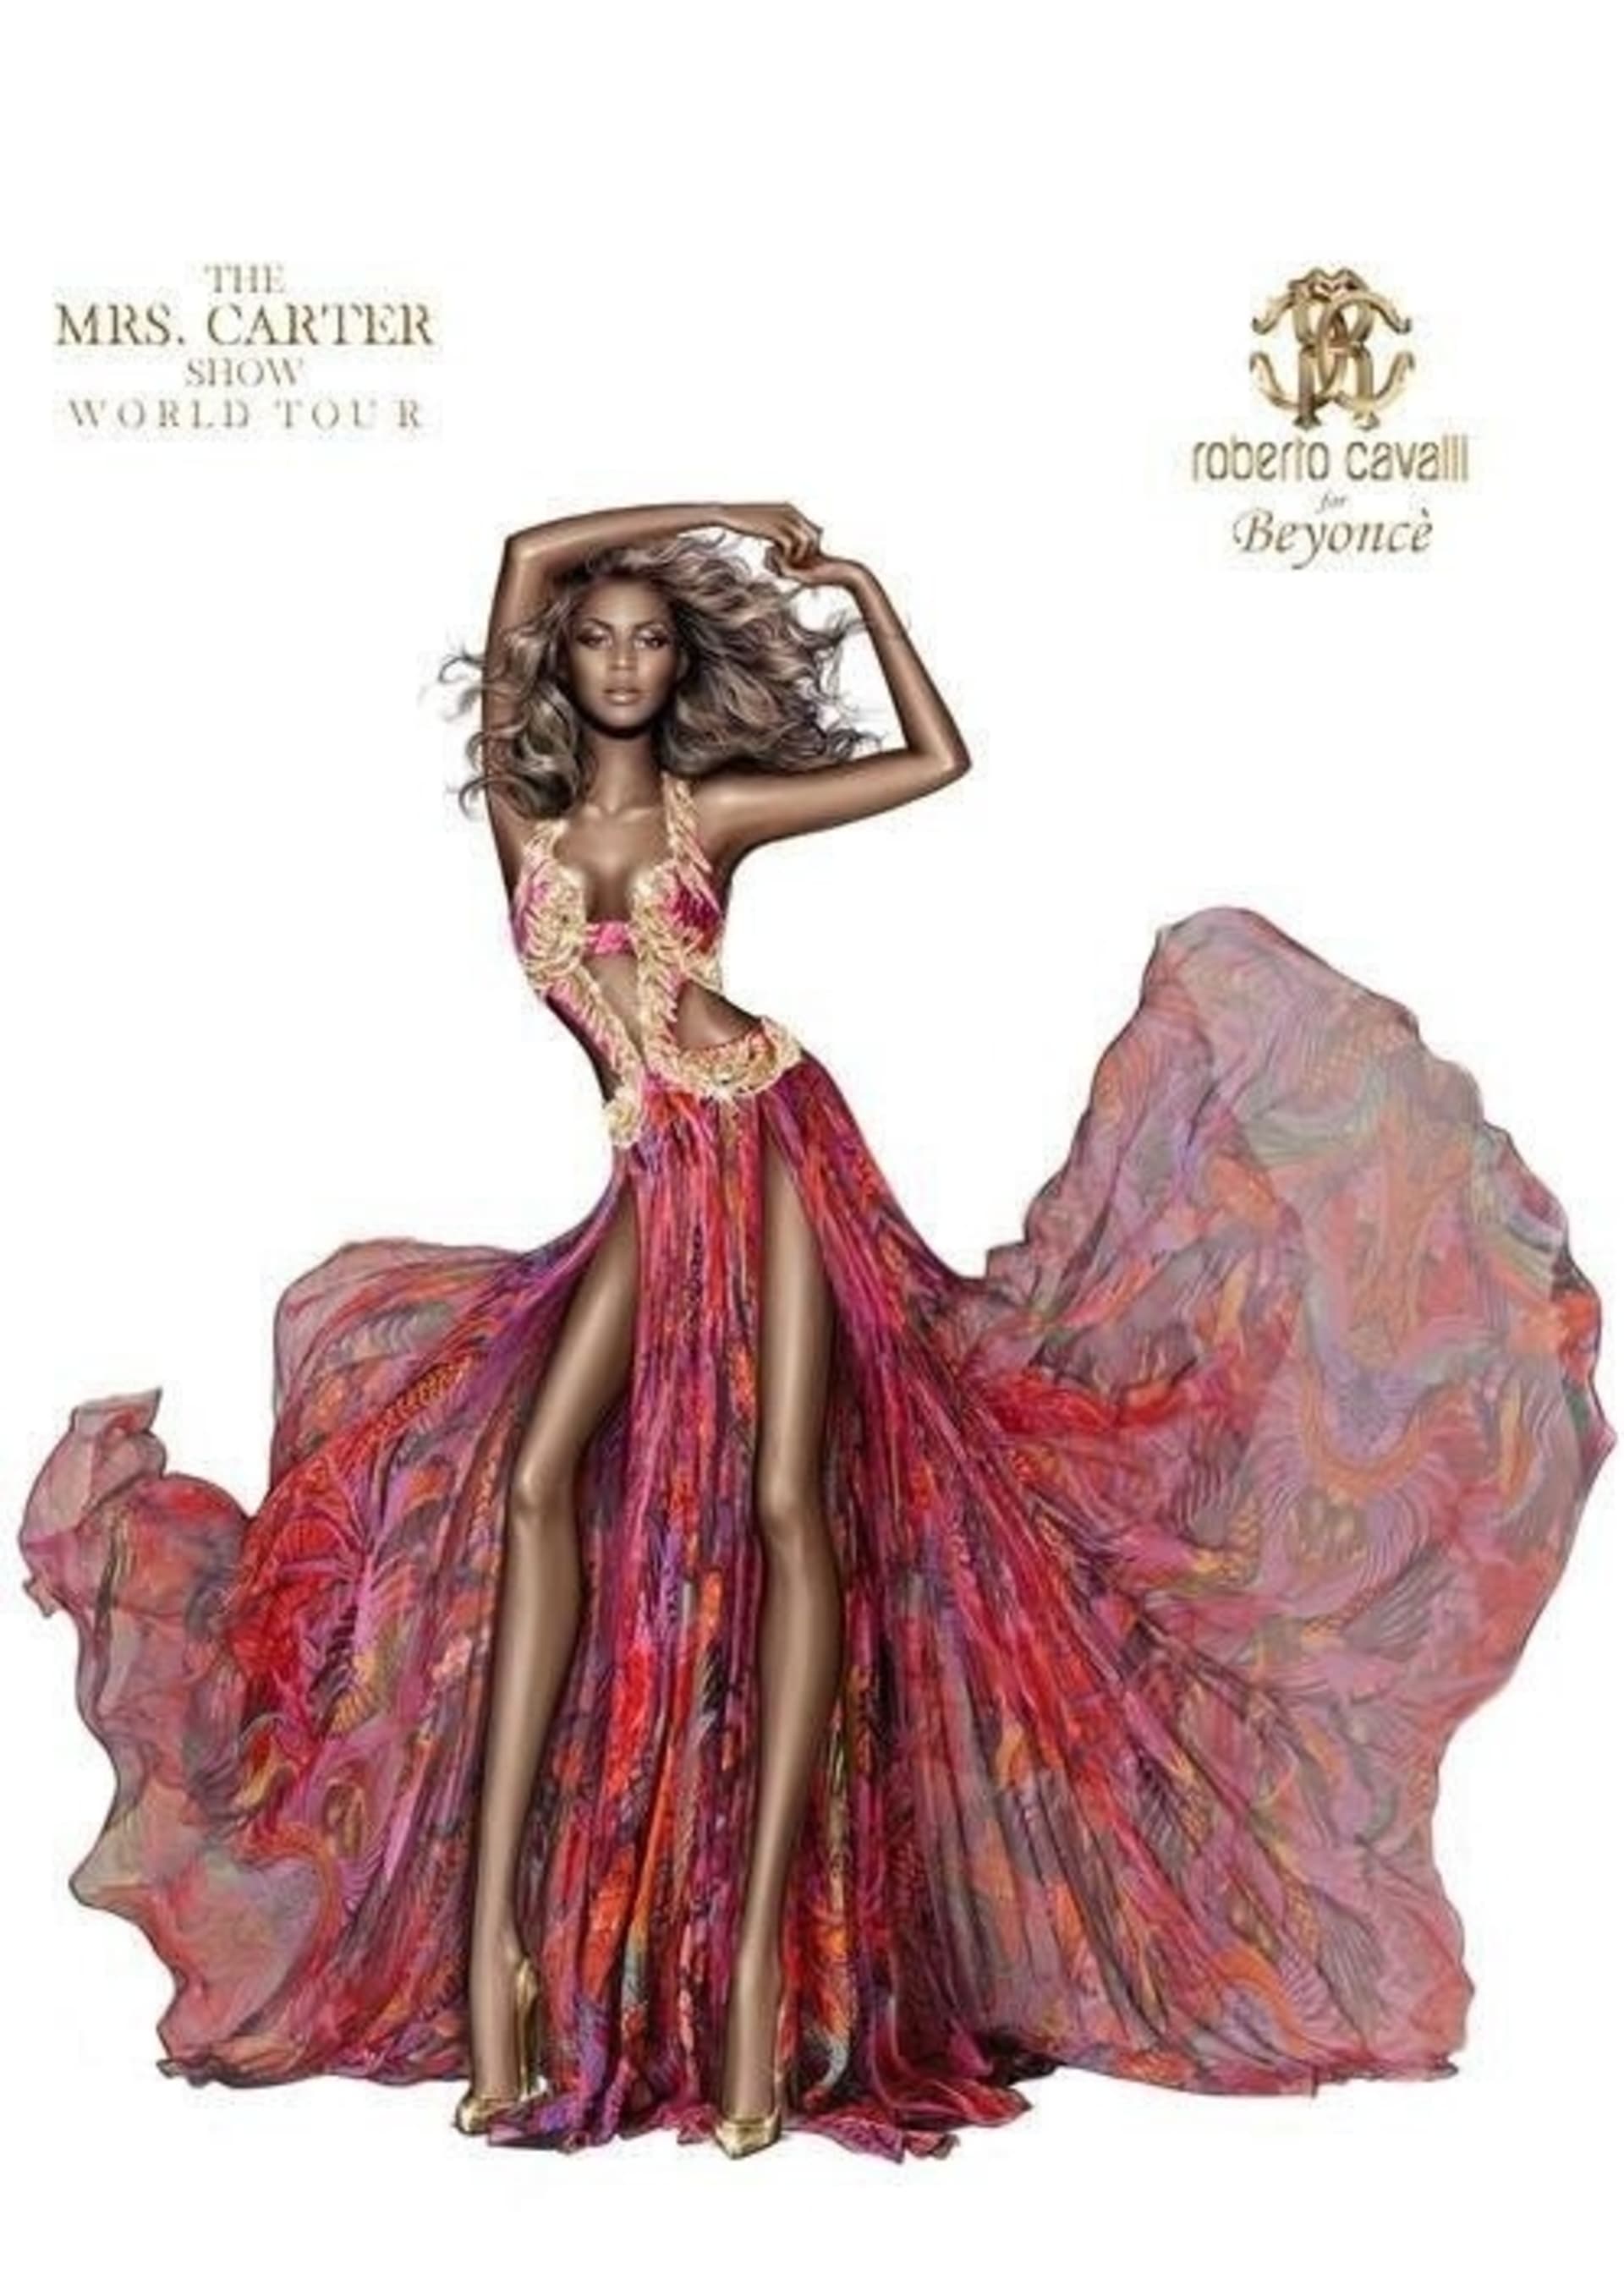 Nepřirozeně dlouhé nohy a žádné plné křivky. Takhle vypadá zpěvačka Beyoncé v kampani módního domu Roberto Cavalli